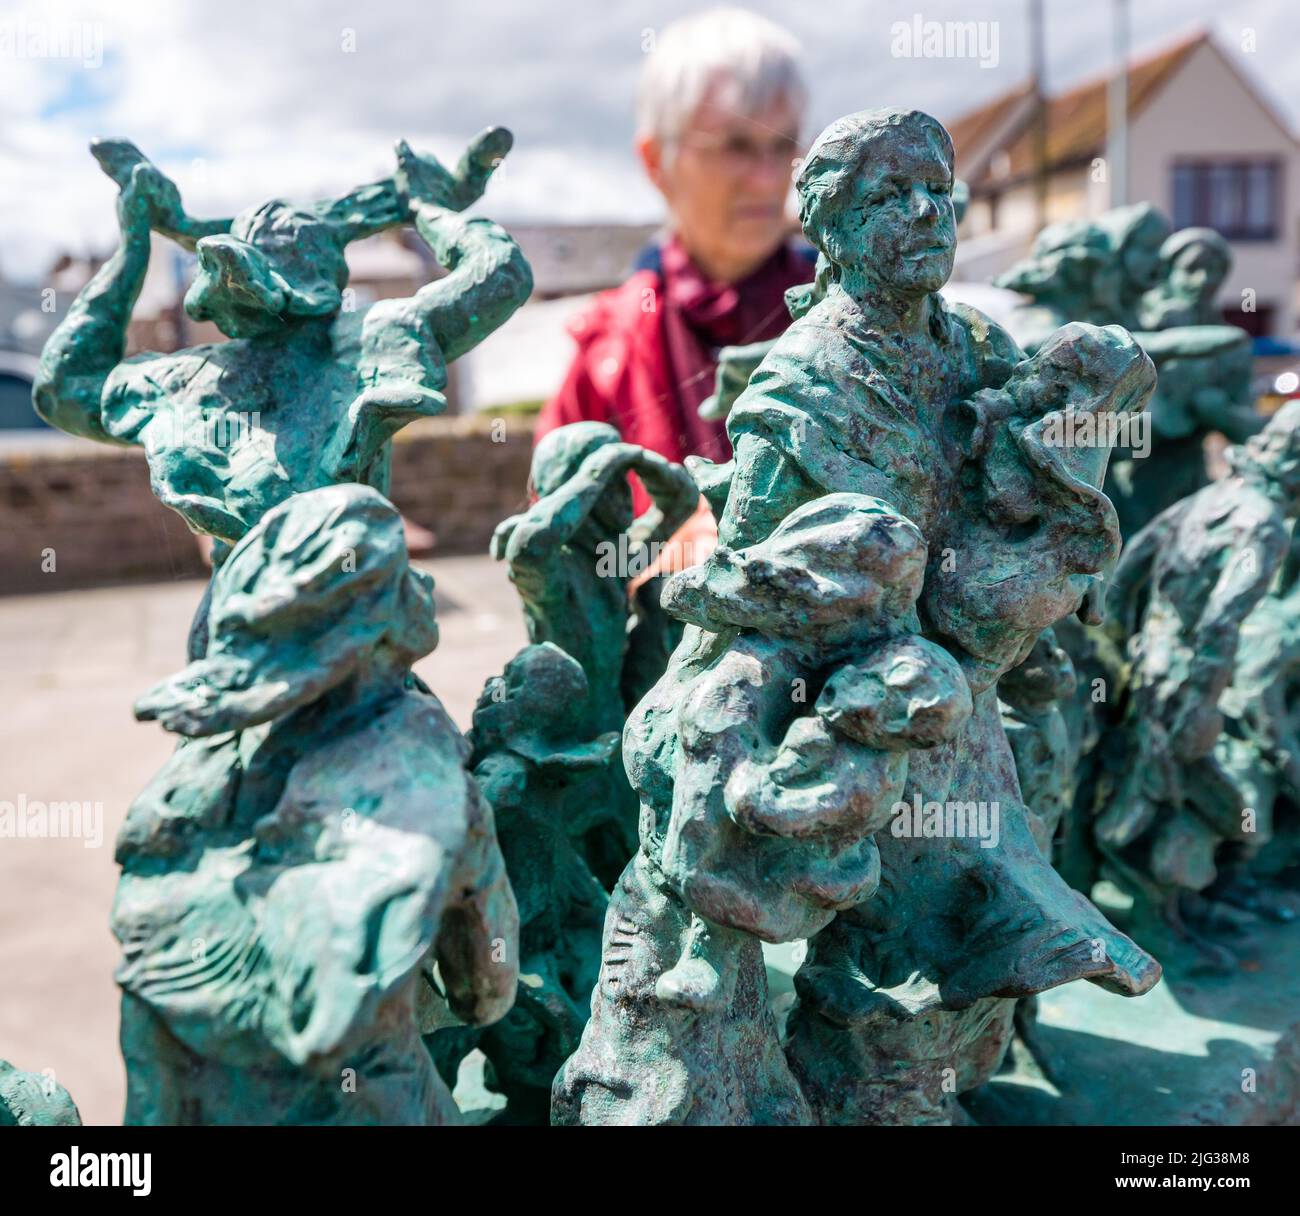 Denkmal für die Fischerei-Katastrophe Statue von Miniaturfiguren von Witwen und Kindern von Jill Watson, Eyemouth, Berwickshire, Schottland, Großbritannien Stockfoto